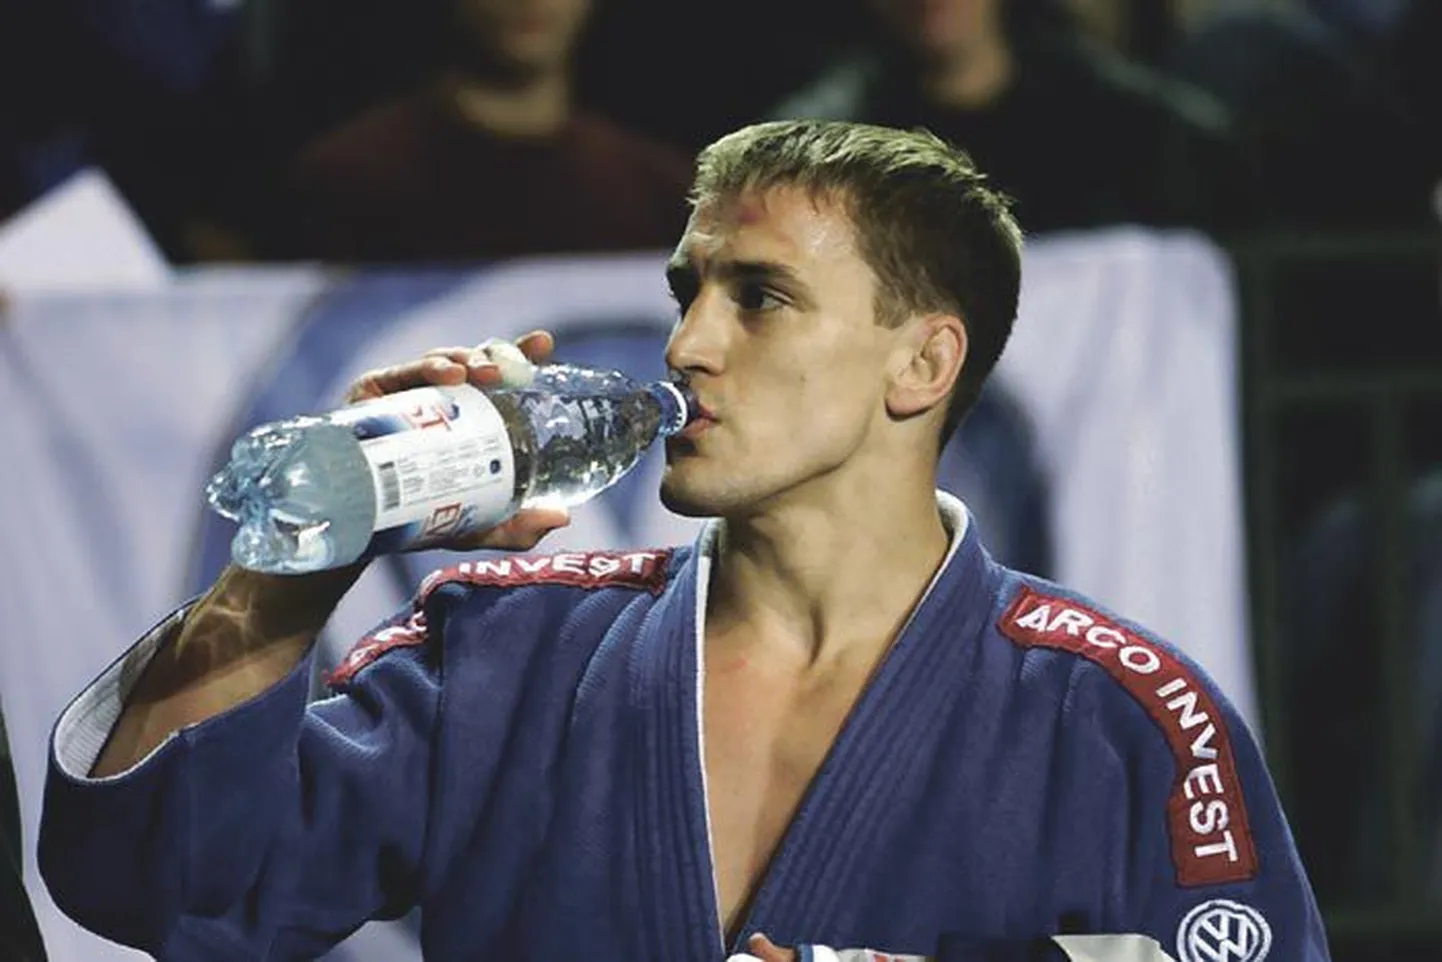 Medalilootusega olümpiale läinud judoka Aleksei Budõlini saagiks jäi Ateenas üks võit, üks kaotus ja tühjad pihud.